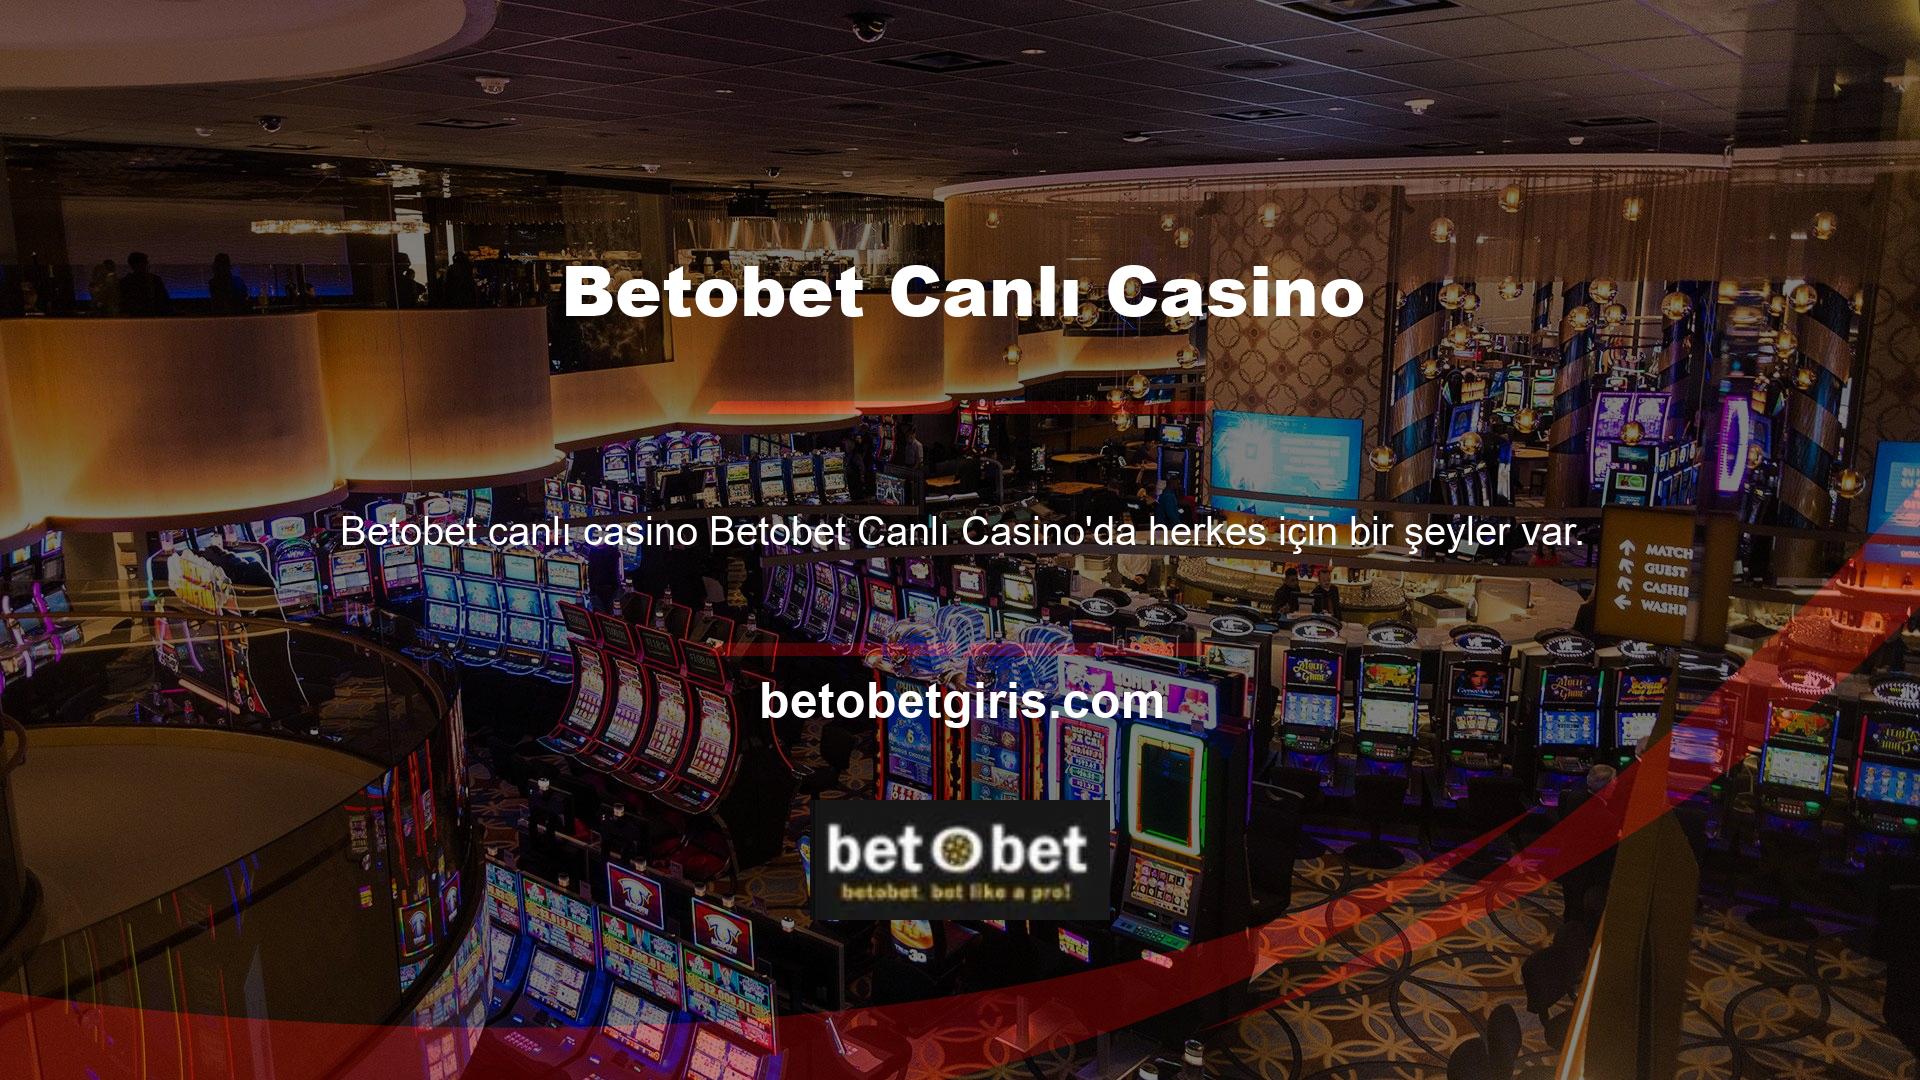 Canlı casinosu ile tanınan Betobet, kullanıcılara eksiksiz bir oyun altyapısı sunan sektörün en seçkin canlı bahis sitelerinden biridir